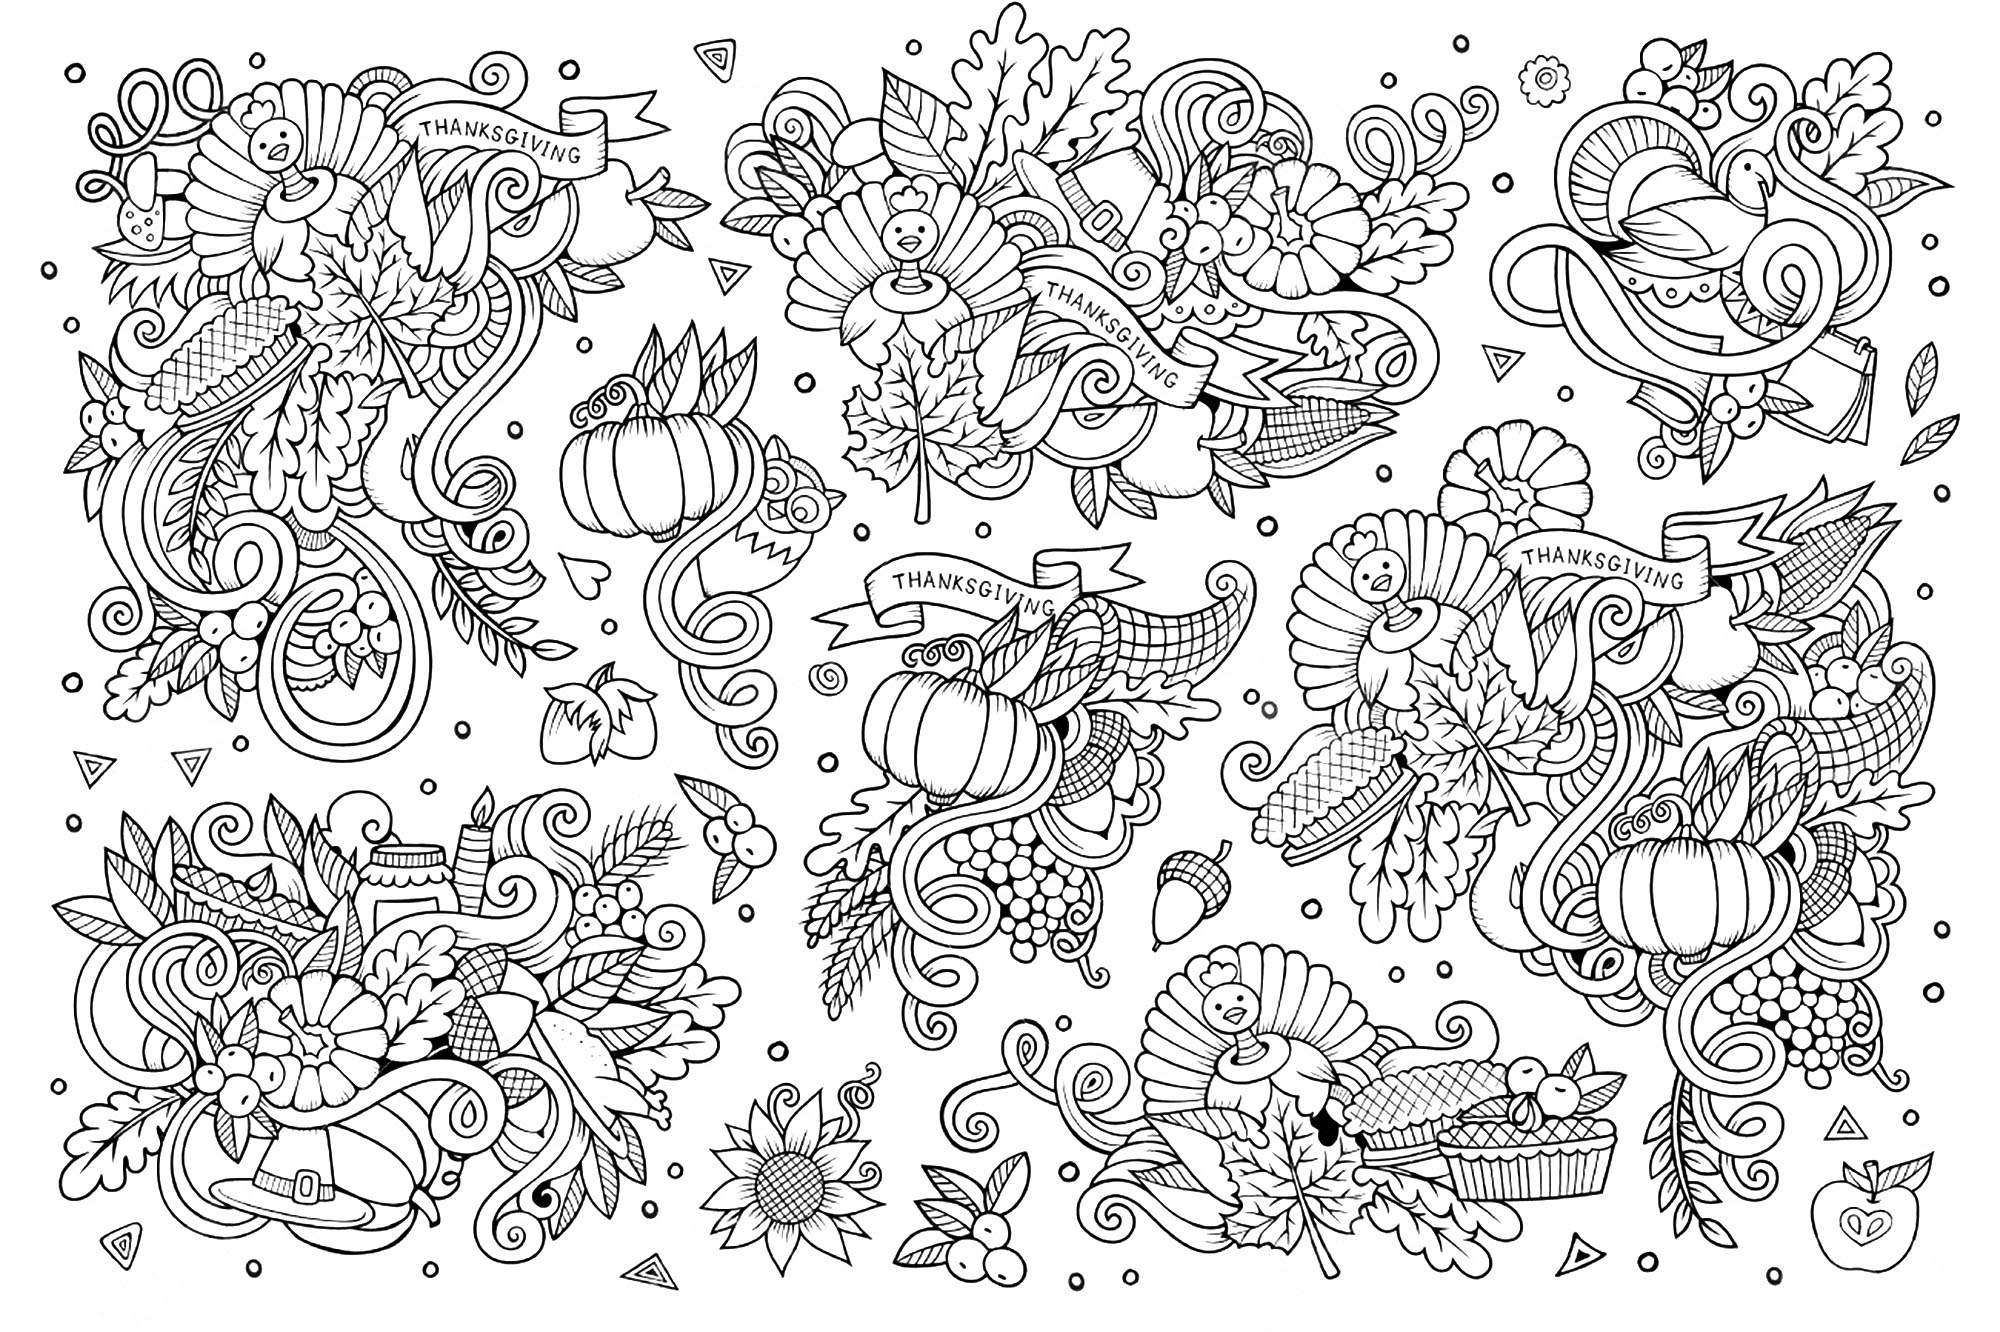 Dessin style Doodle de Thanksgiving. Muchos motivos relacionados con la fiesta de Acción de Gracias, Artista : Olga Kostenko   Origen : 123rf